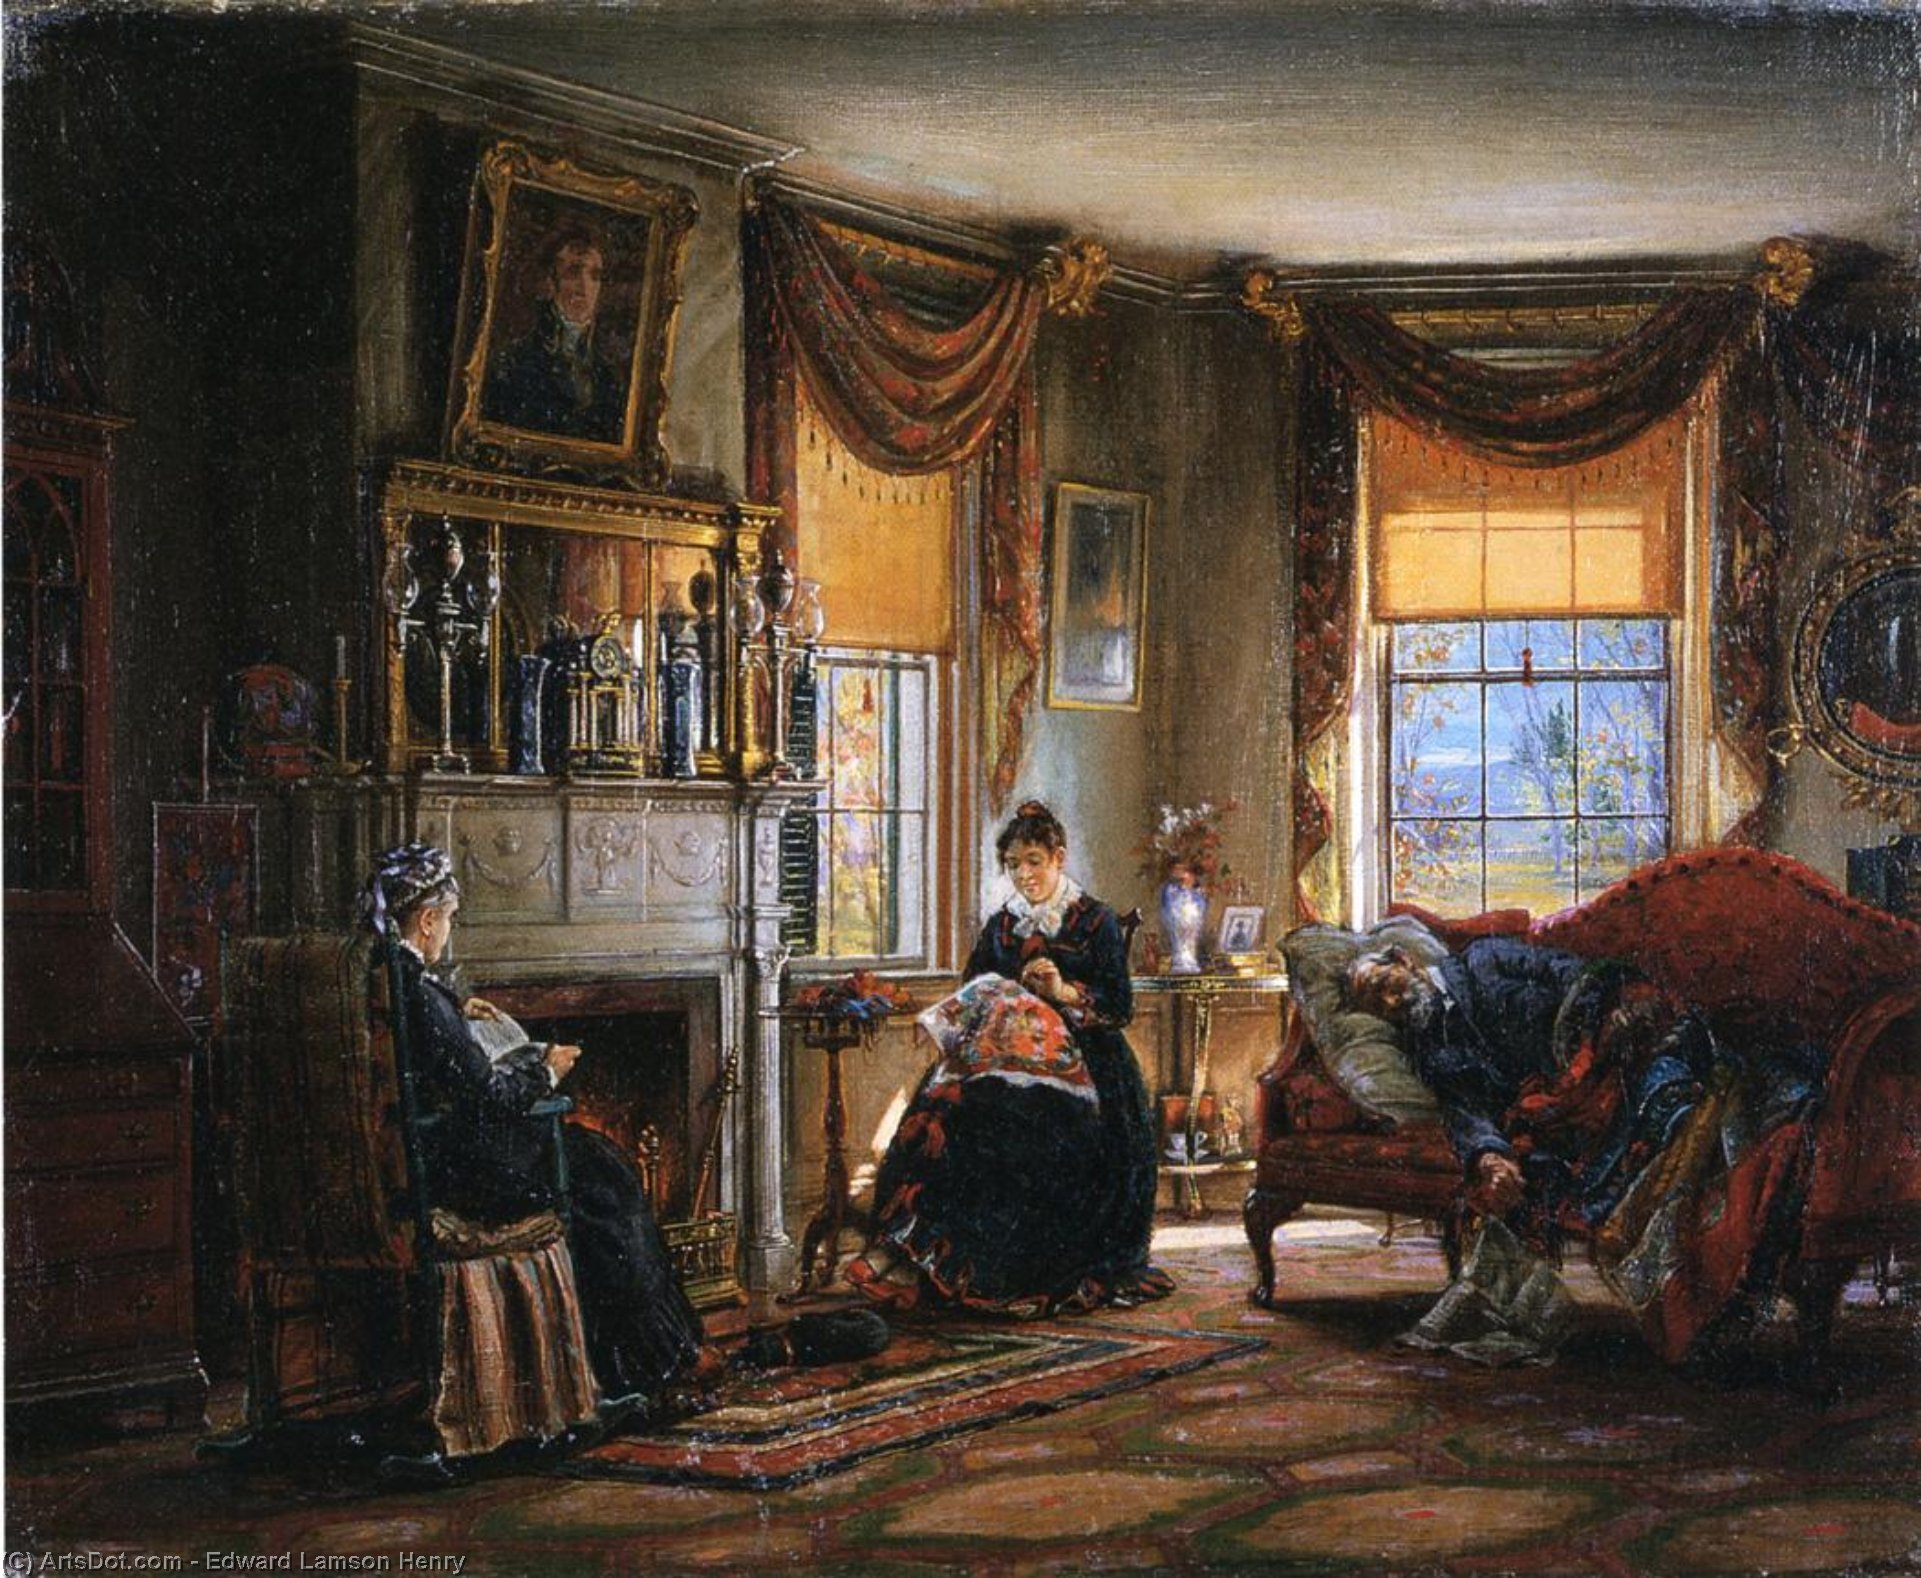 Дворянский быт века. Carl Herpfer (1836-1897). Художник. Edward Lamson Henry художник.